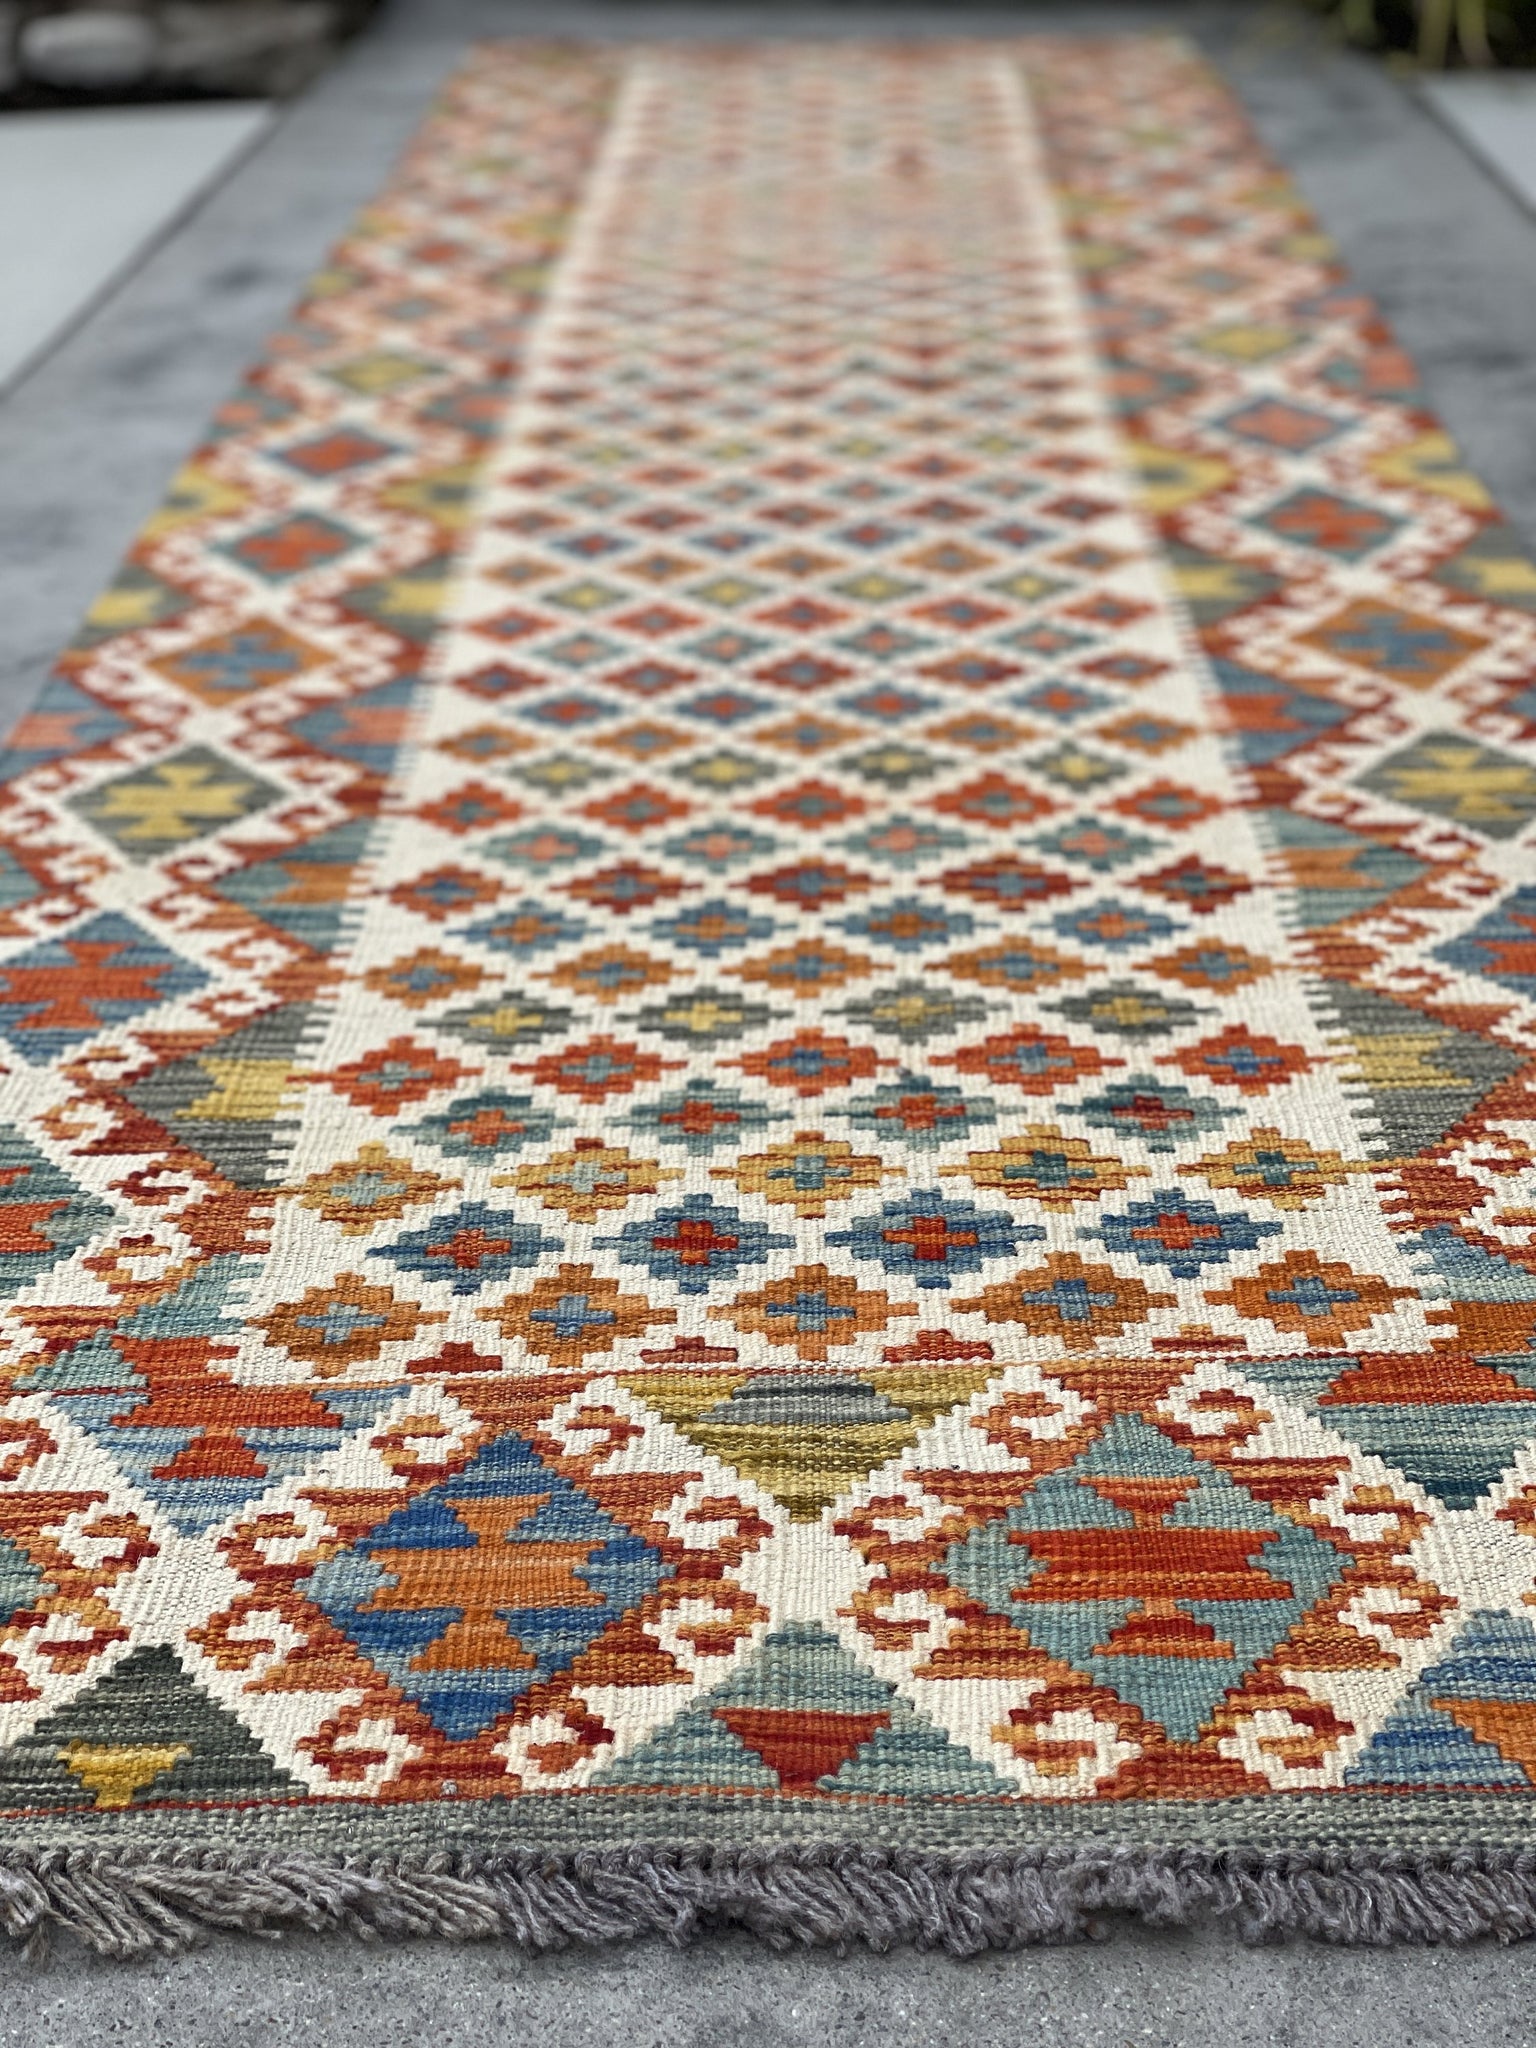 3x13 (90x395) Handmade Afghan Kilim Rug Runner | White Orange Blue Green Yellow | Flatweave Flat Weave Tribal Oriental Boho Wool